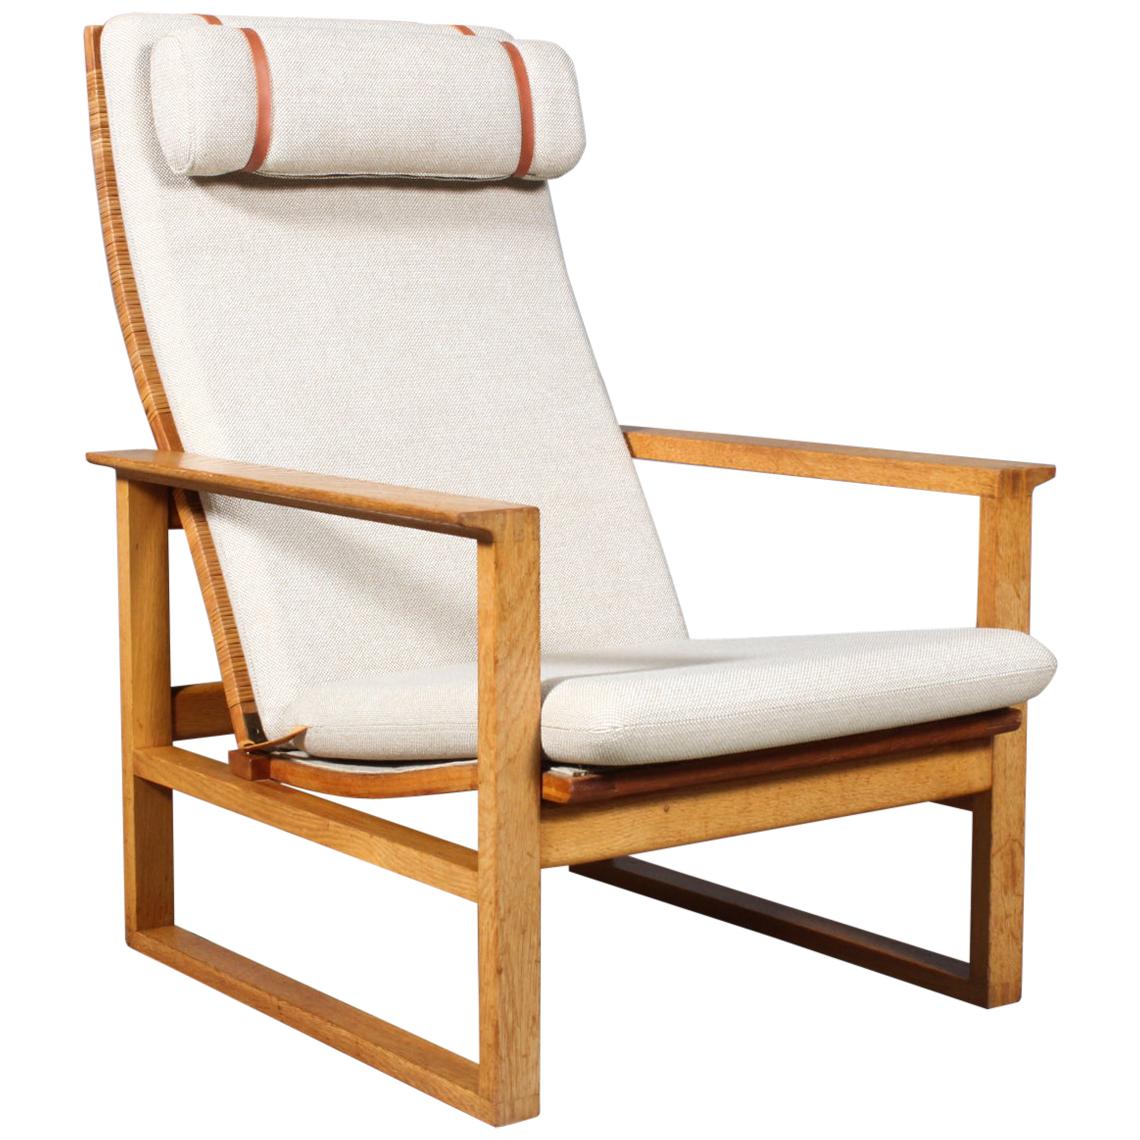 Børge Mogensen 2254 Oak Sled Lounge Chair in Cane, 1956, Denmark